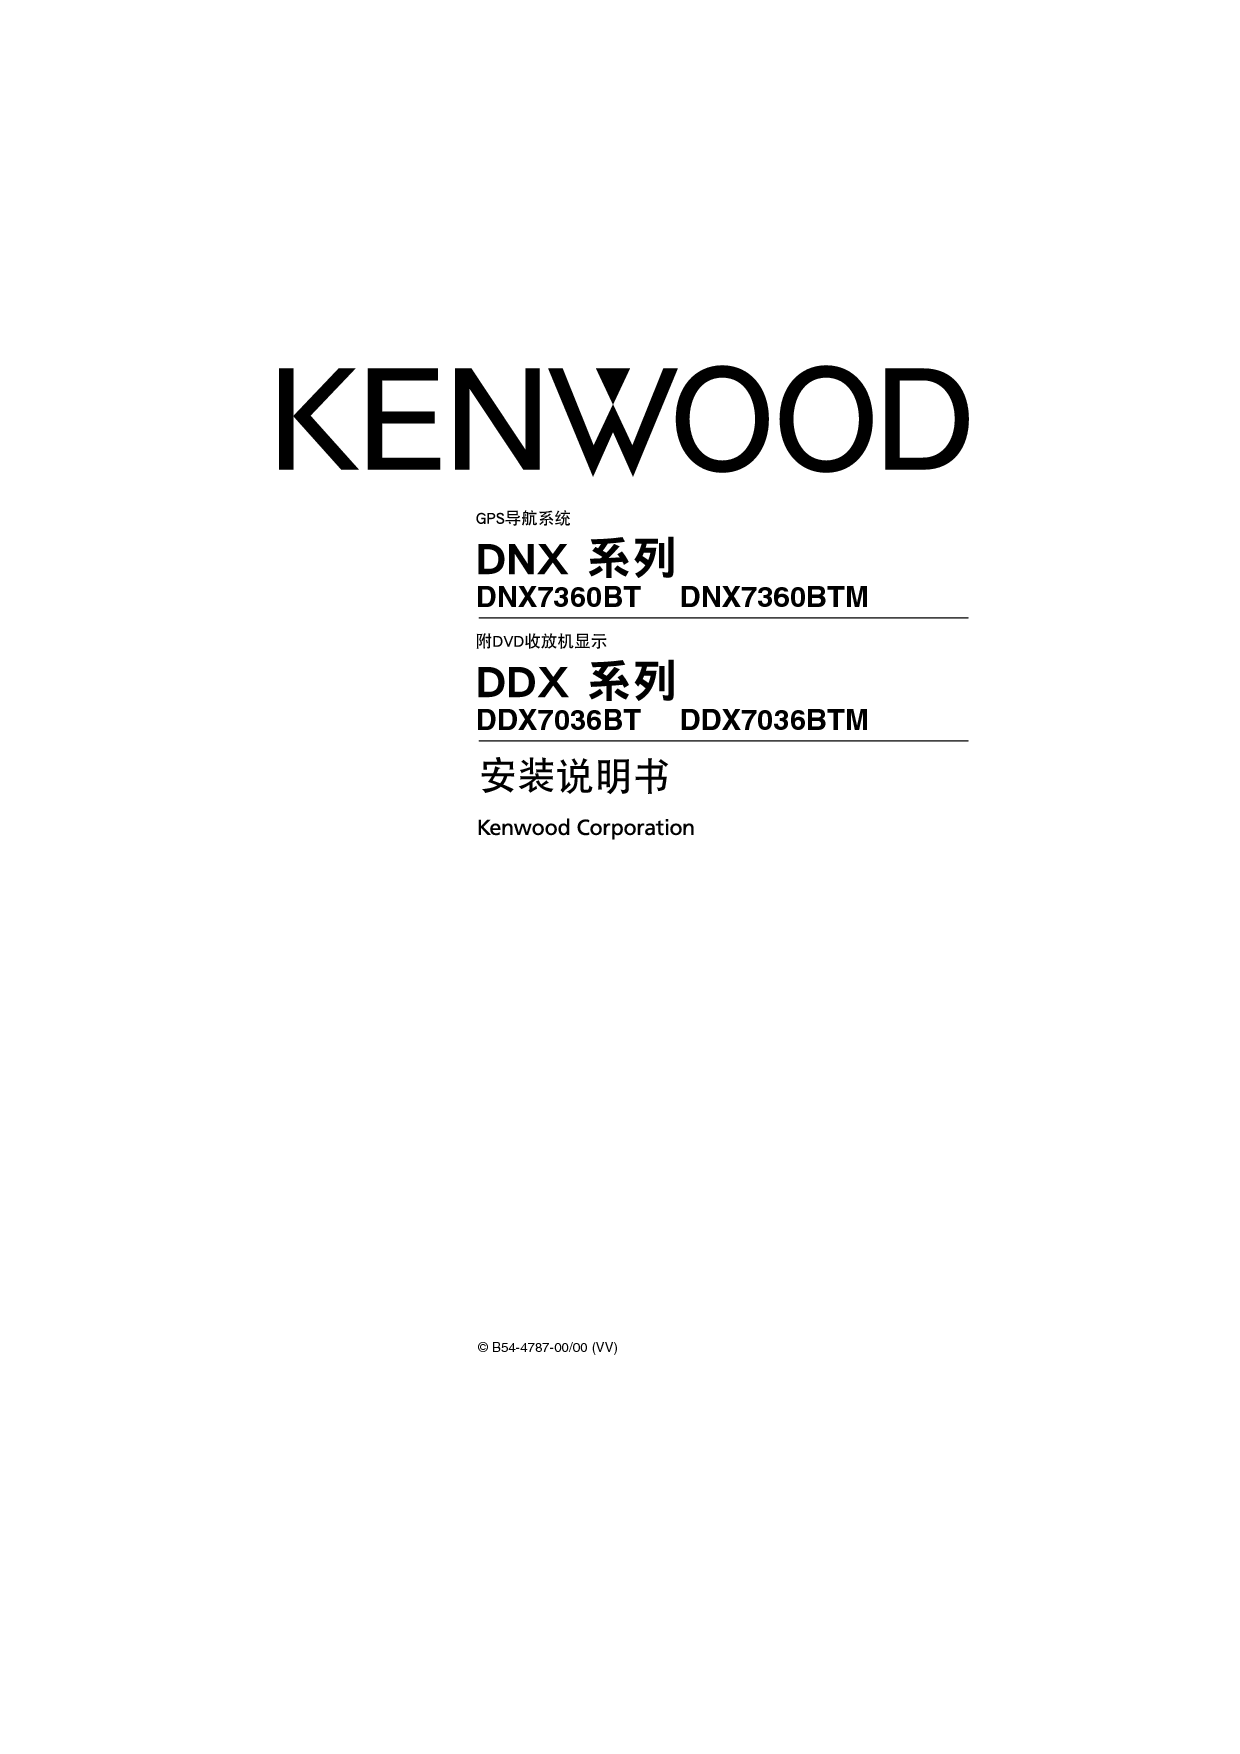 建伍 Kenwood DDX7036BT 安装说明 封面